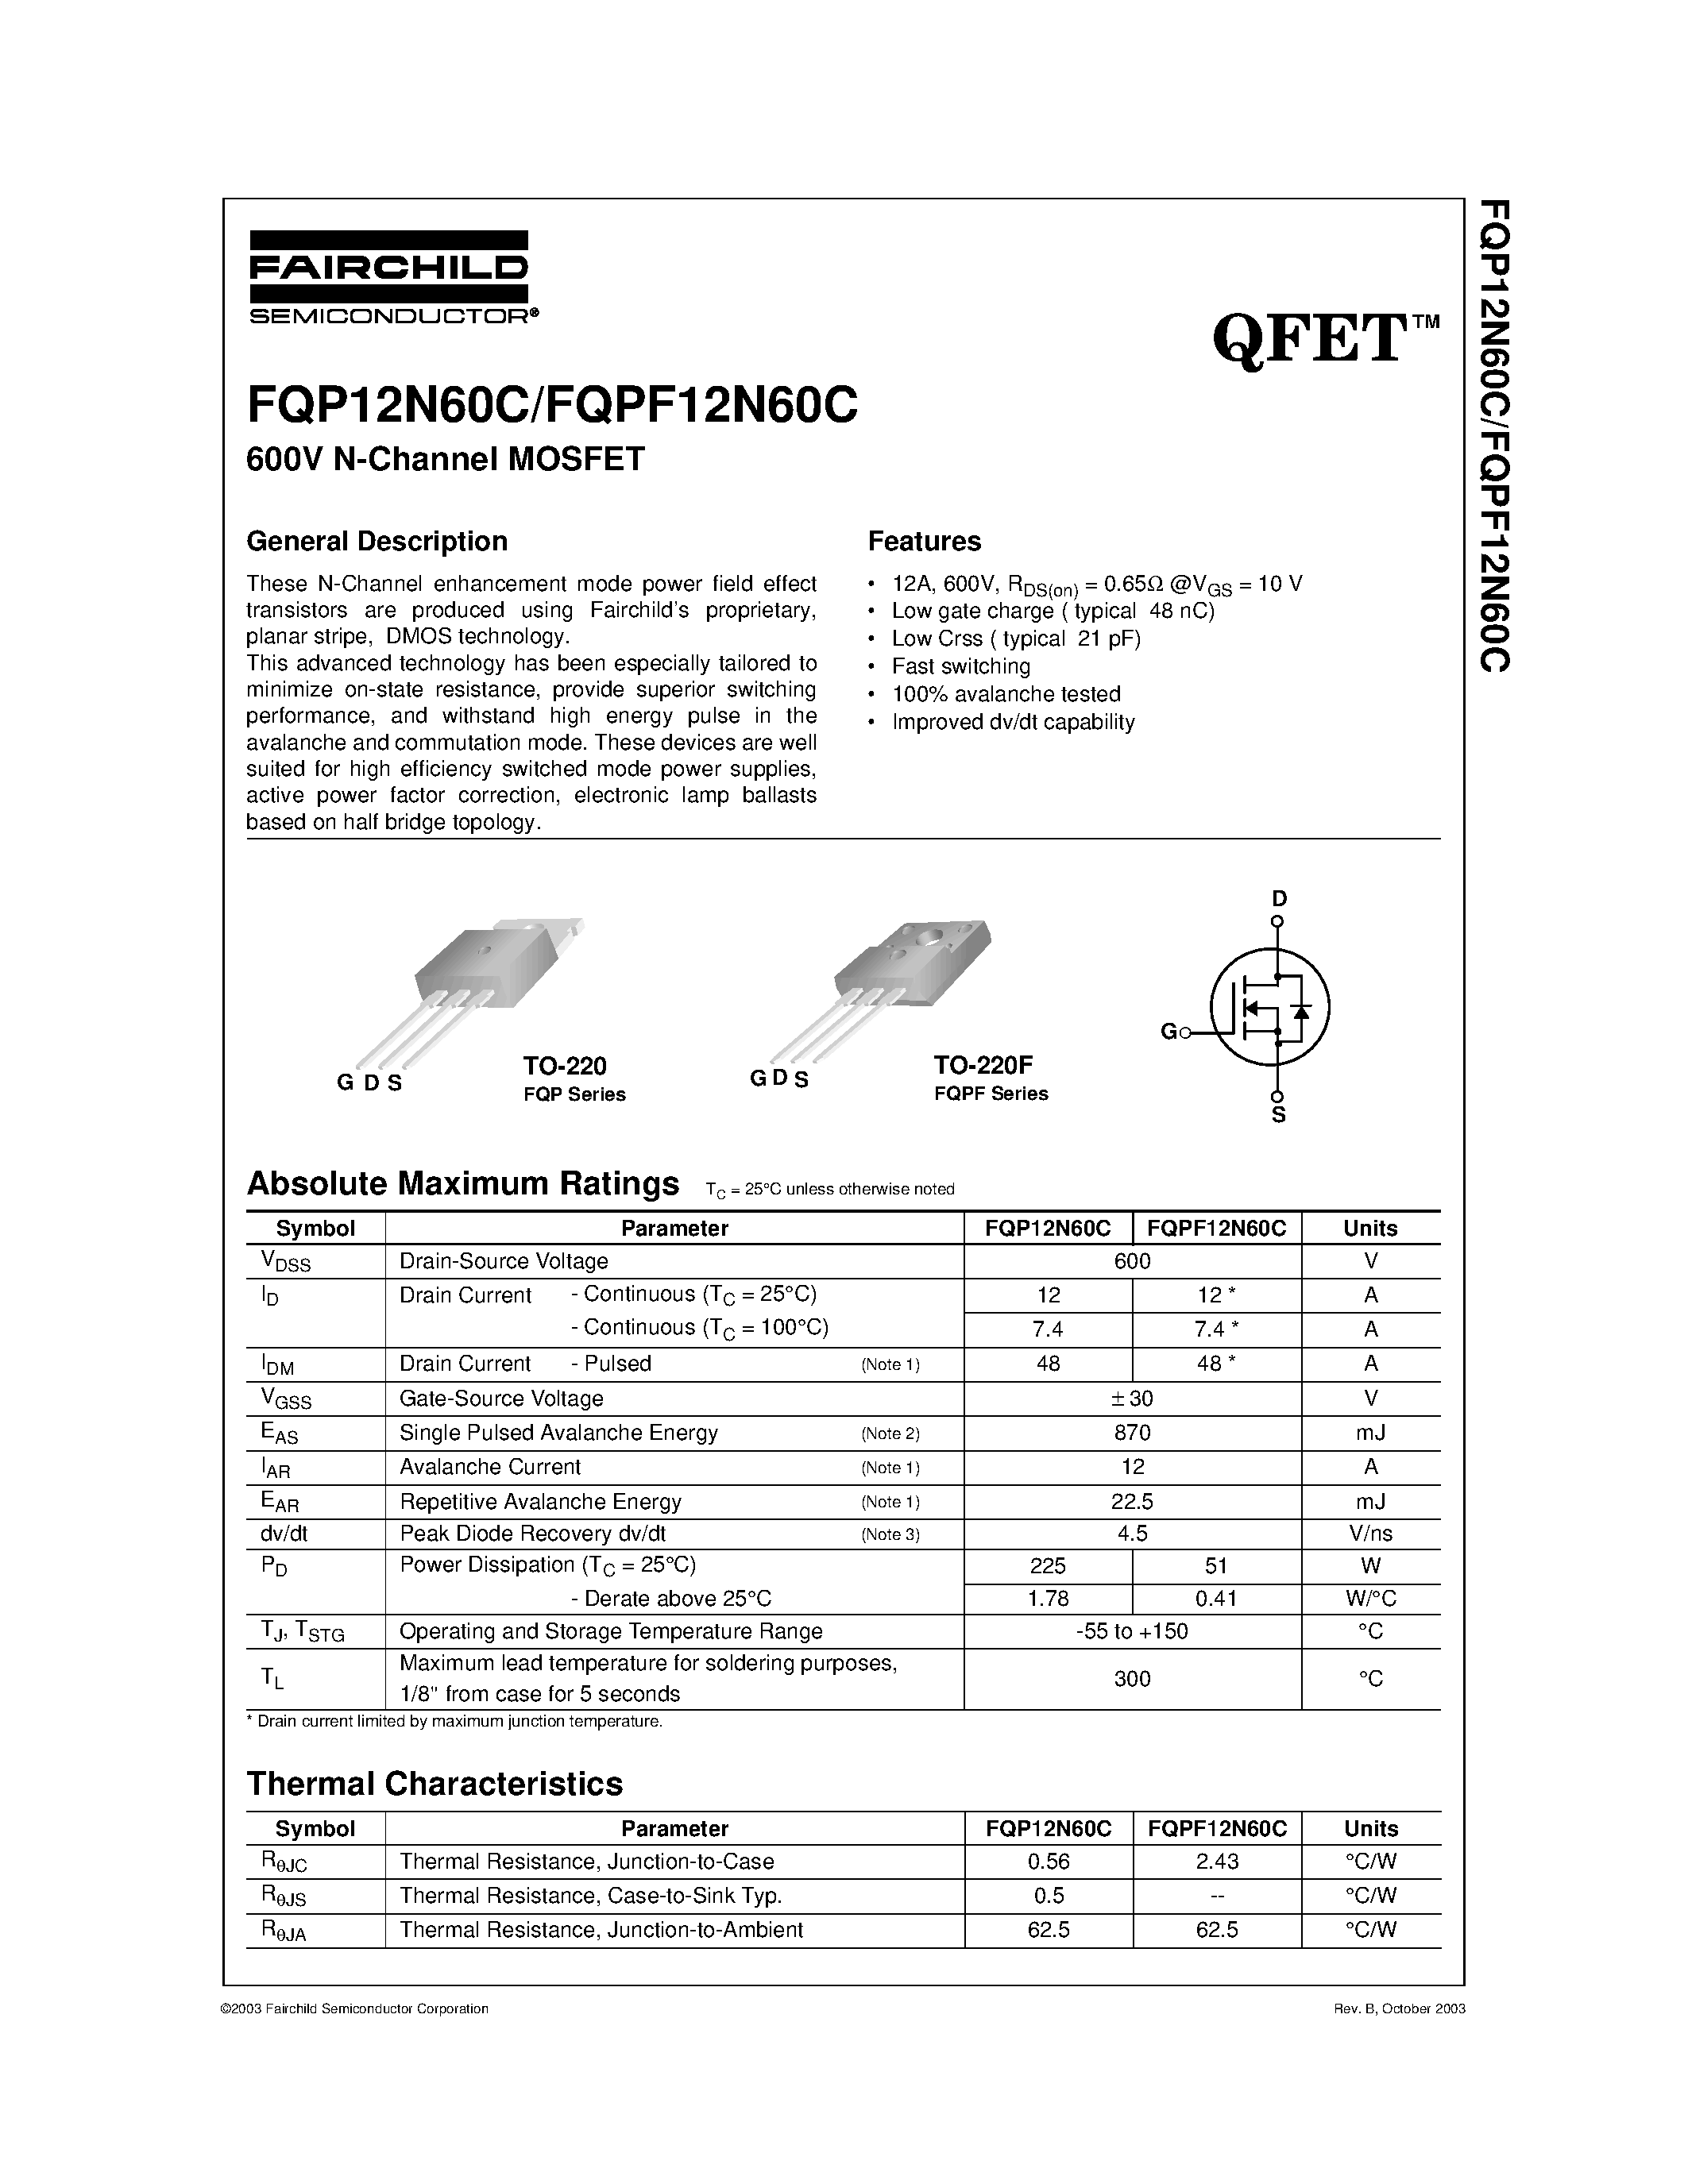 Даташит FQPF12N60C - FQP12N60C/FQPF12N60C страница 1